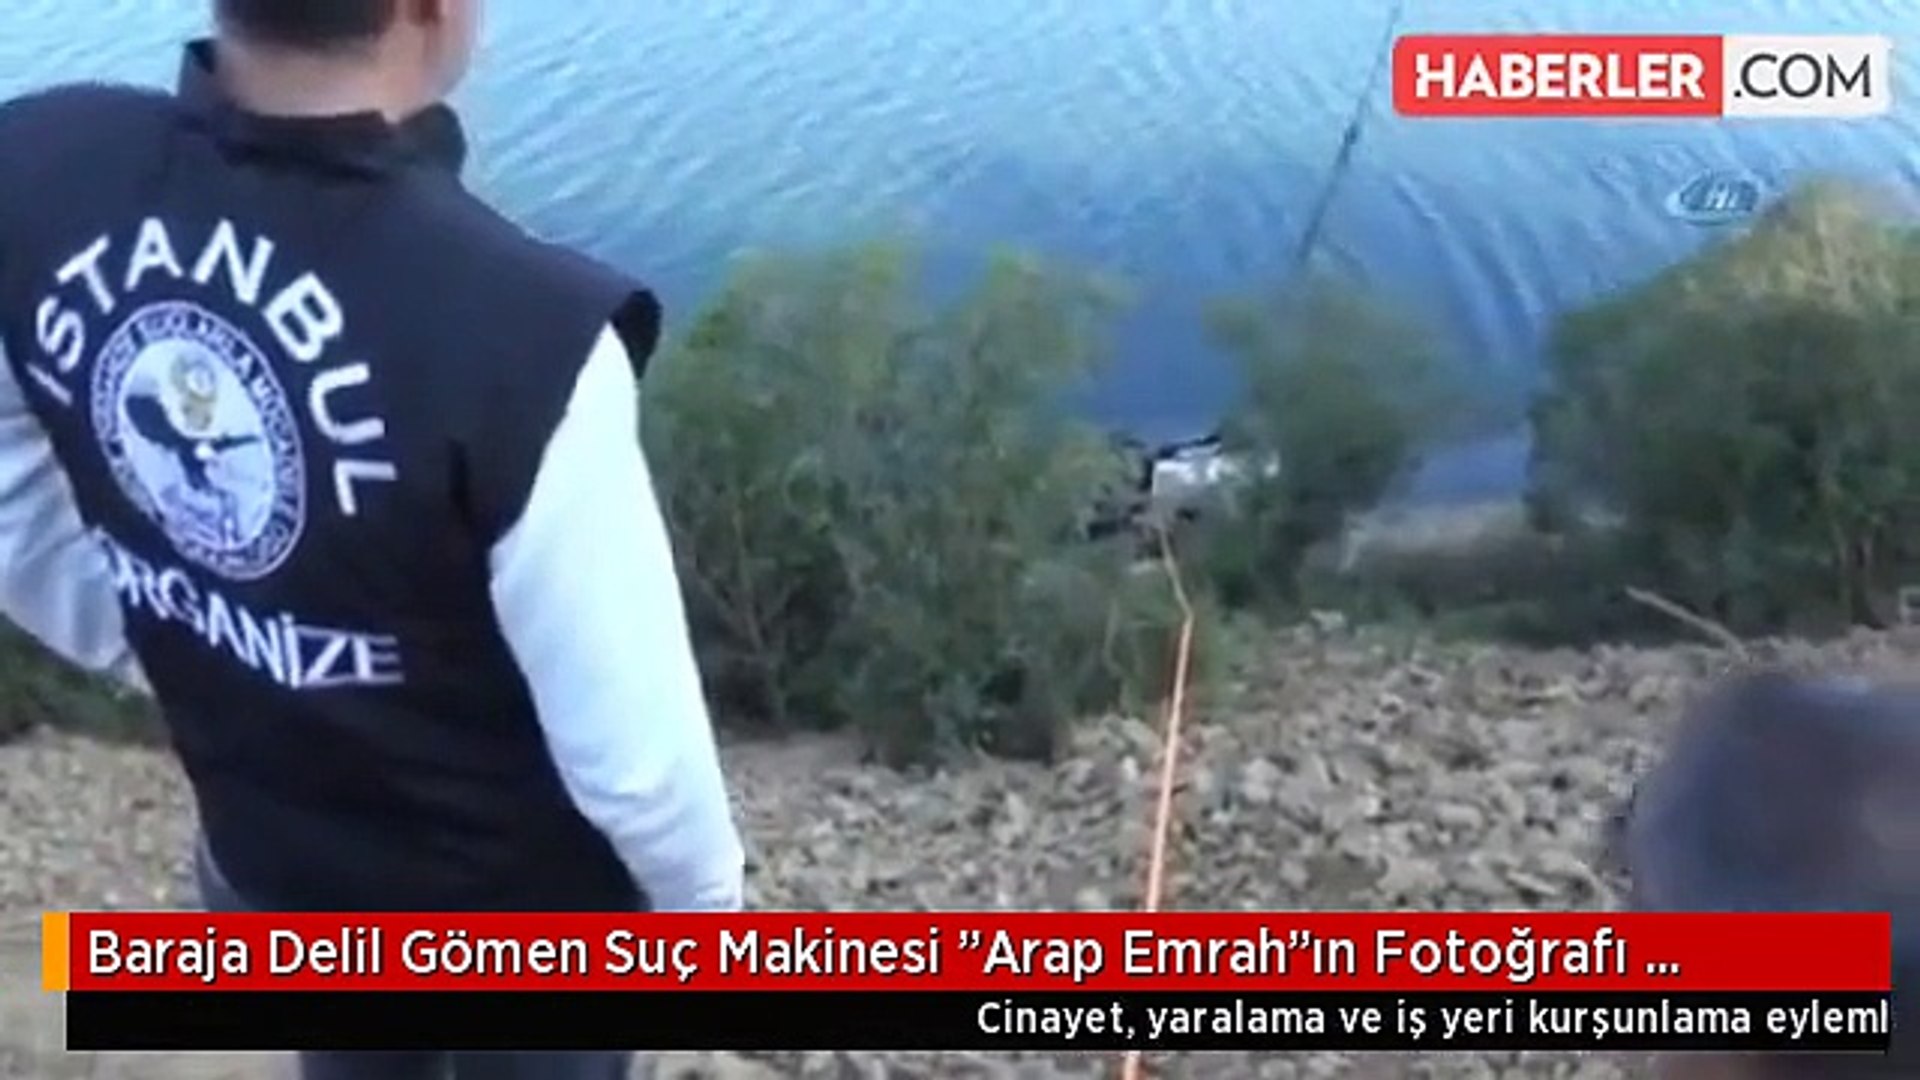 Baraja Delil Gömen Suç Makinesi "Arap Emrah"ın Fotoğrafı Ortaya Çıktı -  Dailymotion Video